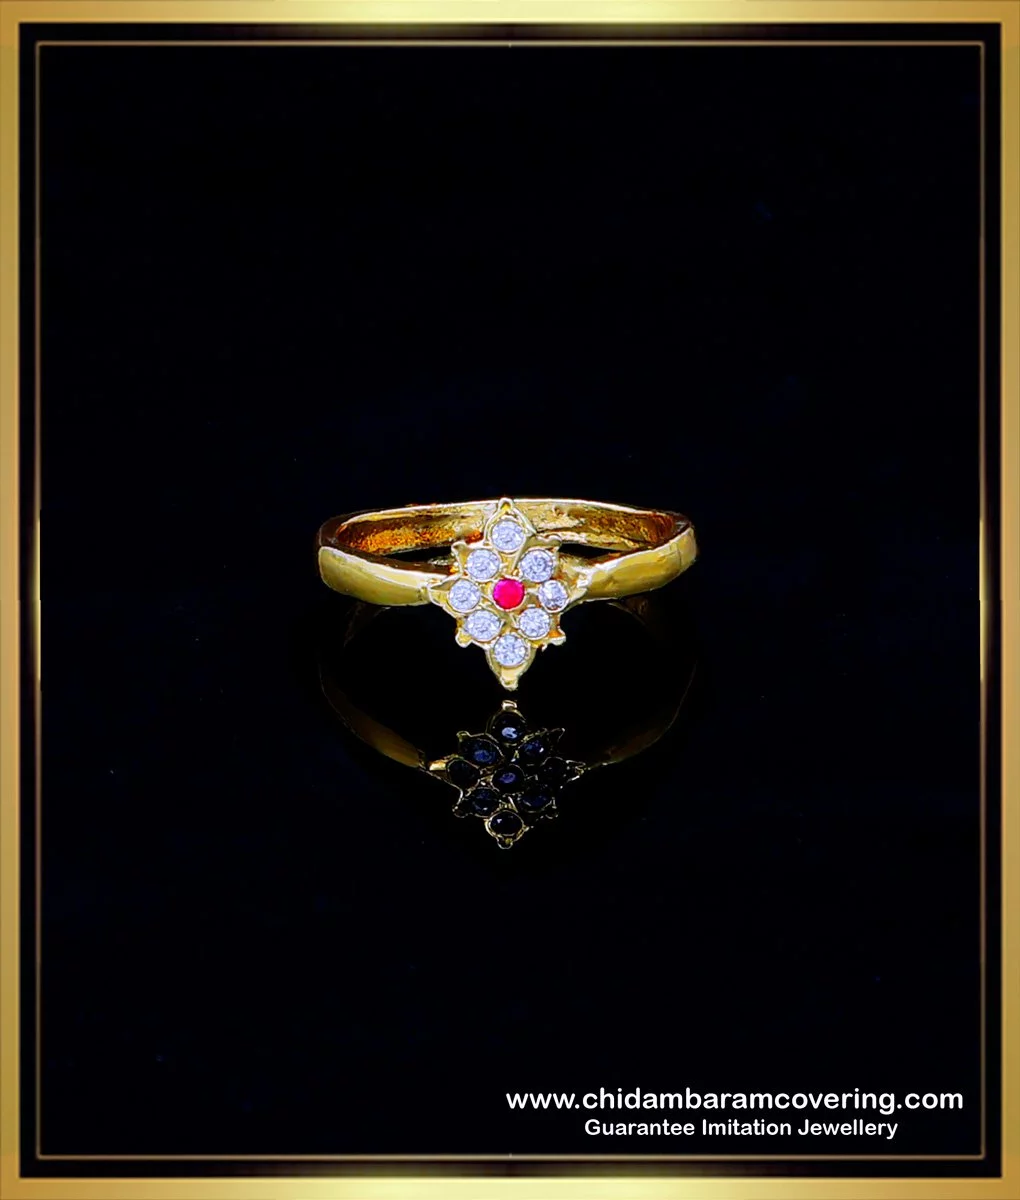 A Chakrayan Gold Men's Ring